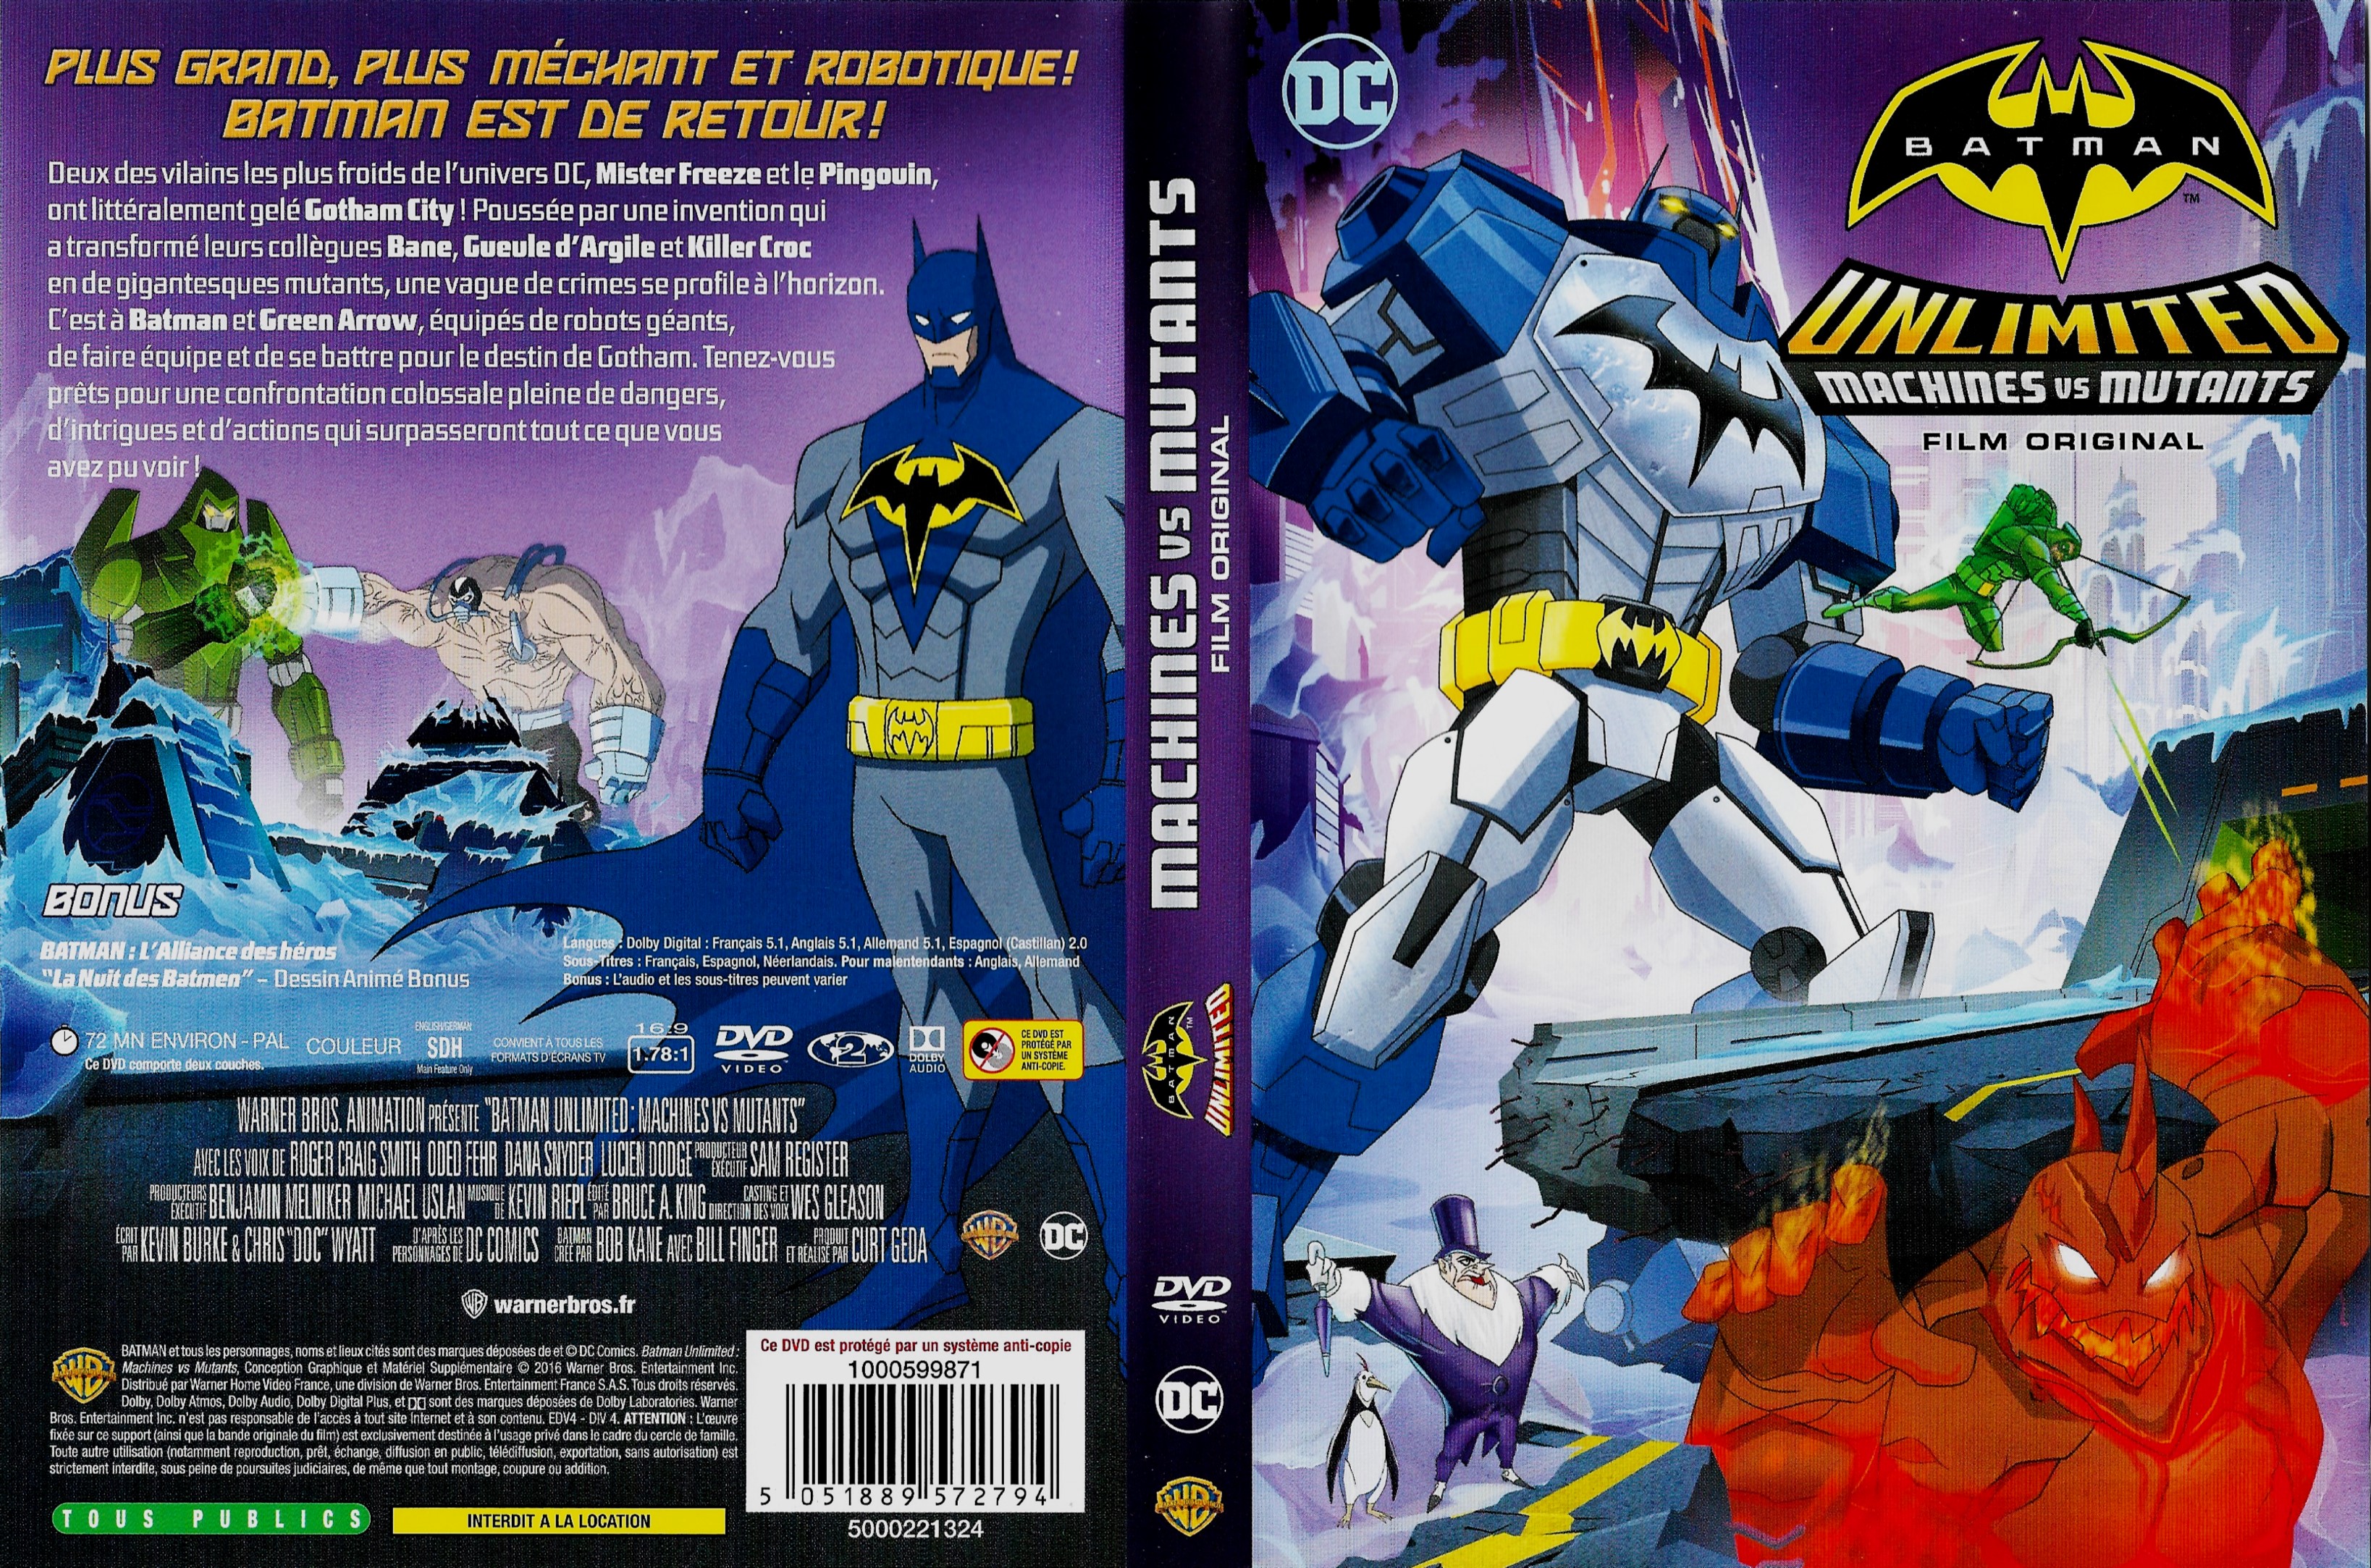 Jaquette DVD Batman Unlimited Machines vs Mutants